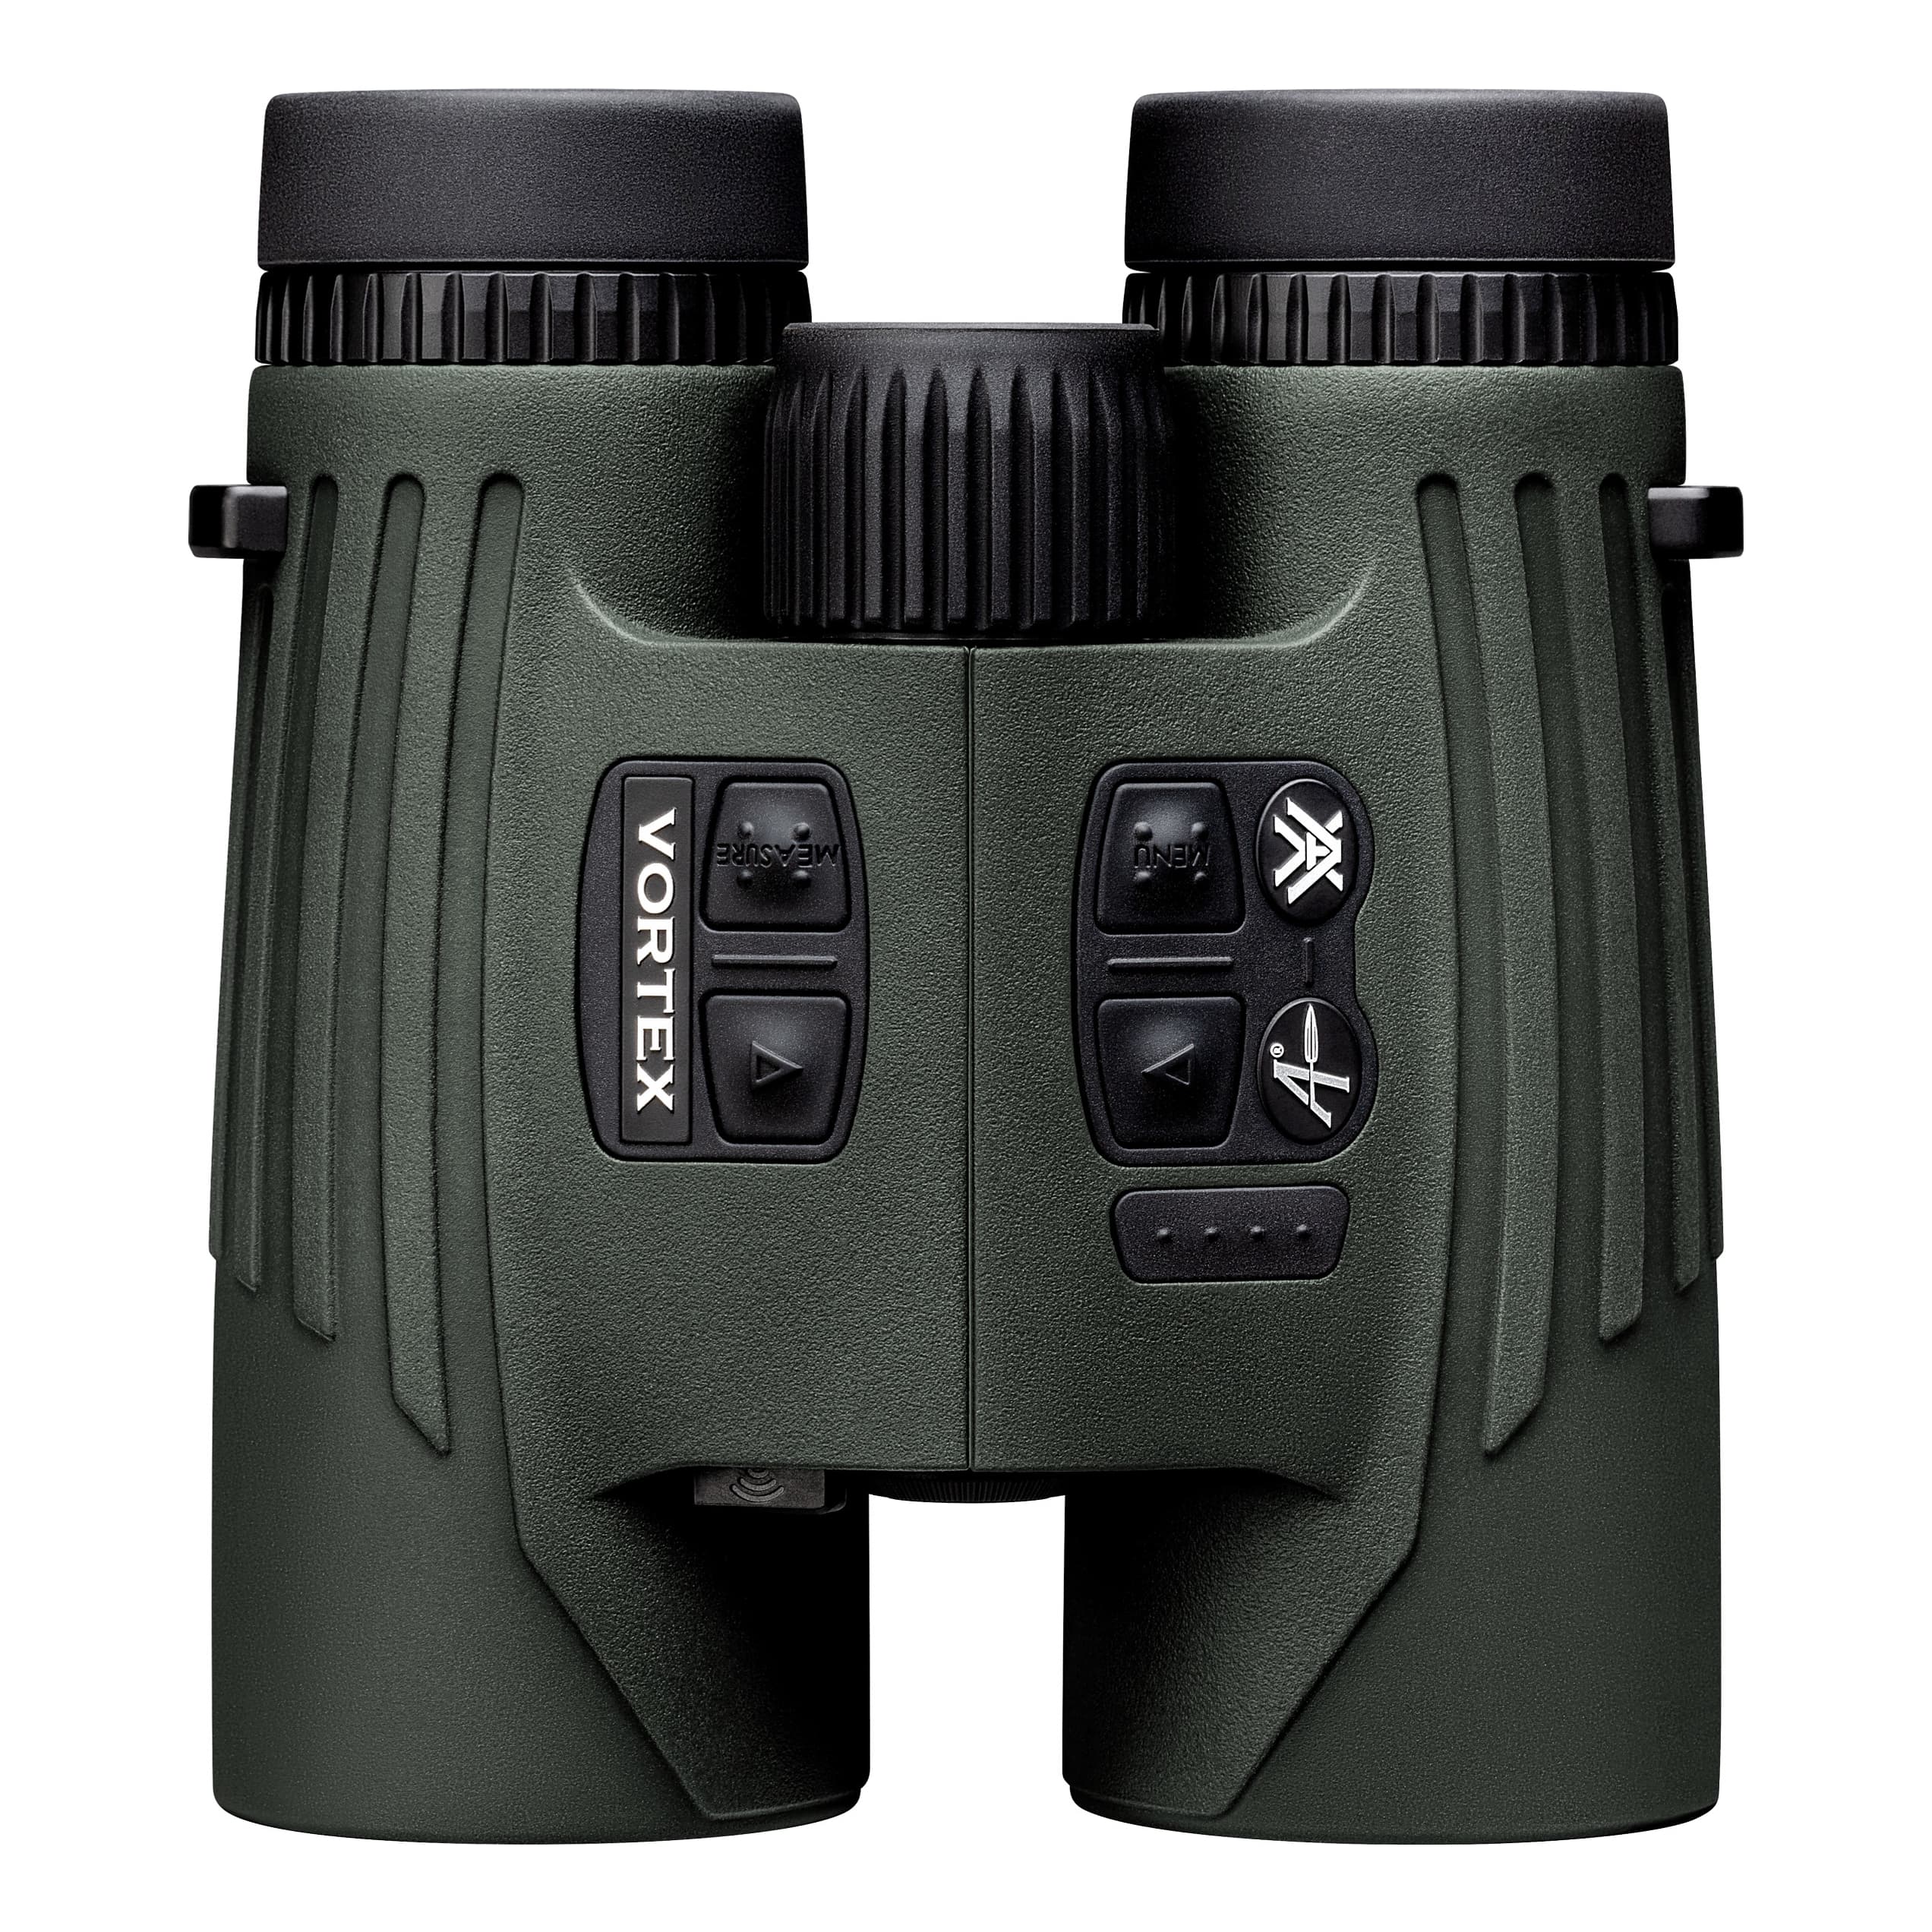 Vortex® Fury™ HD 5000 AB Rangefinding Binocular